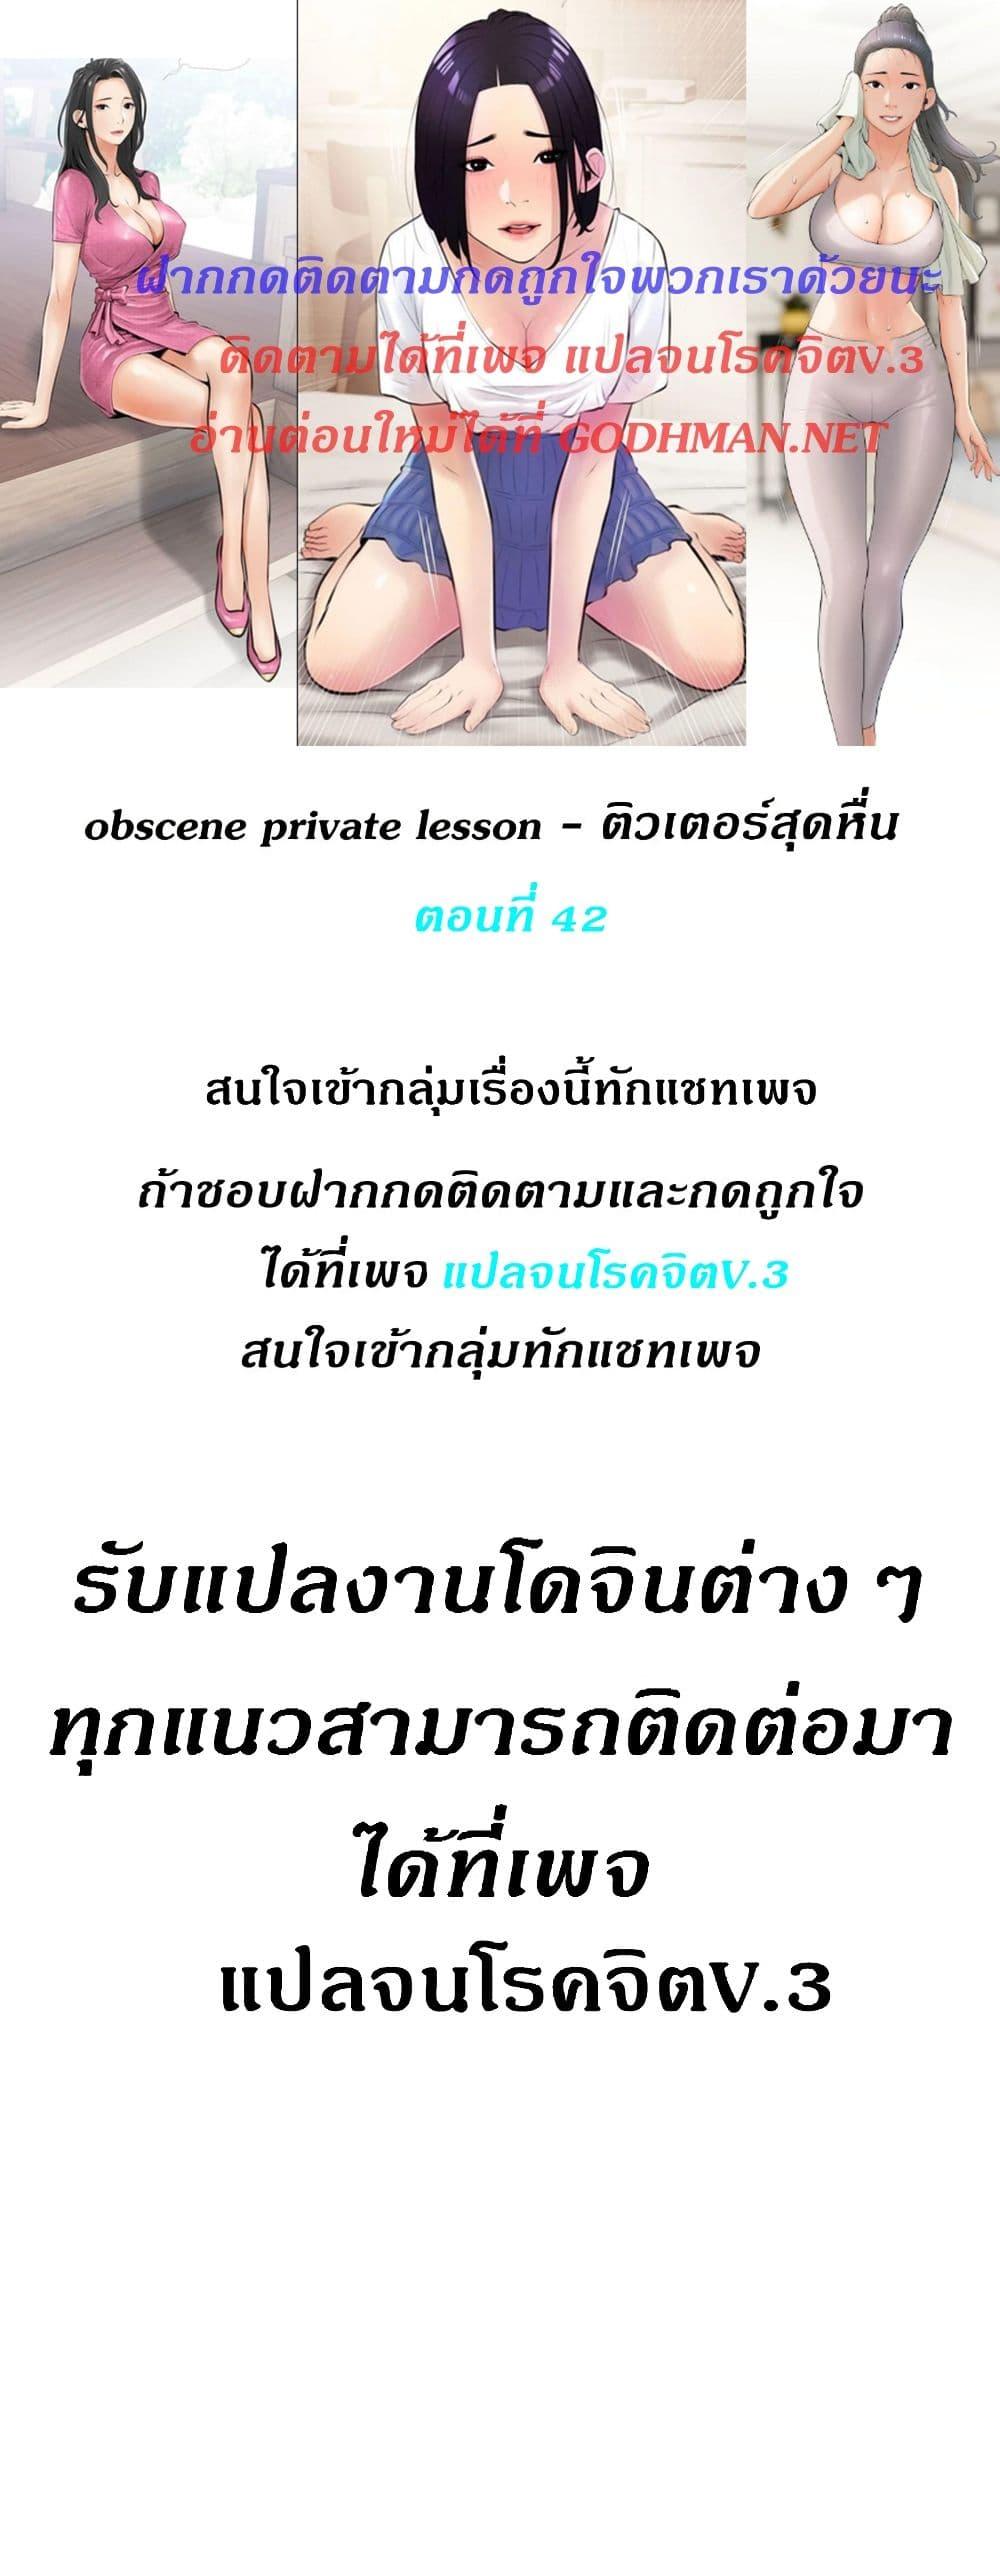 Obscene Private Lesson 42 01